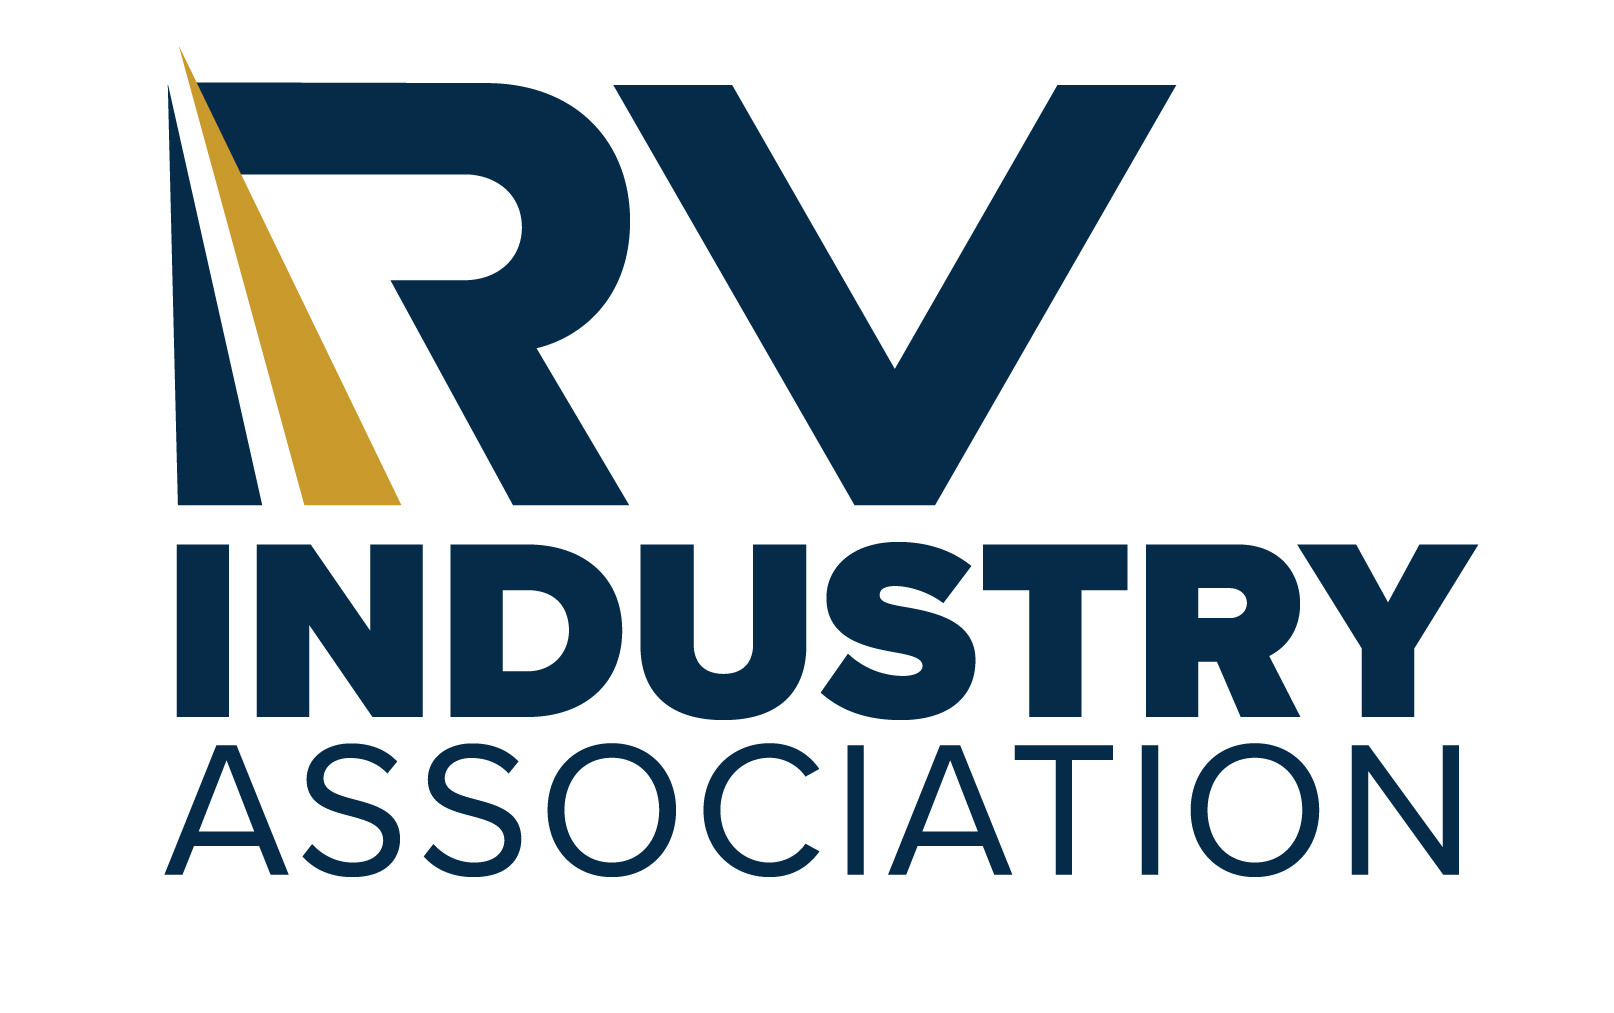 A logo of rv industry association